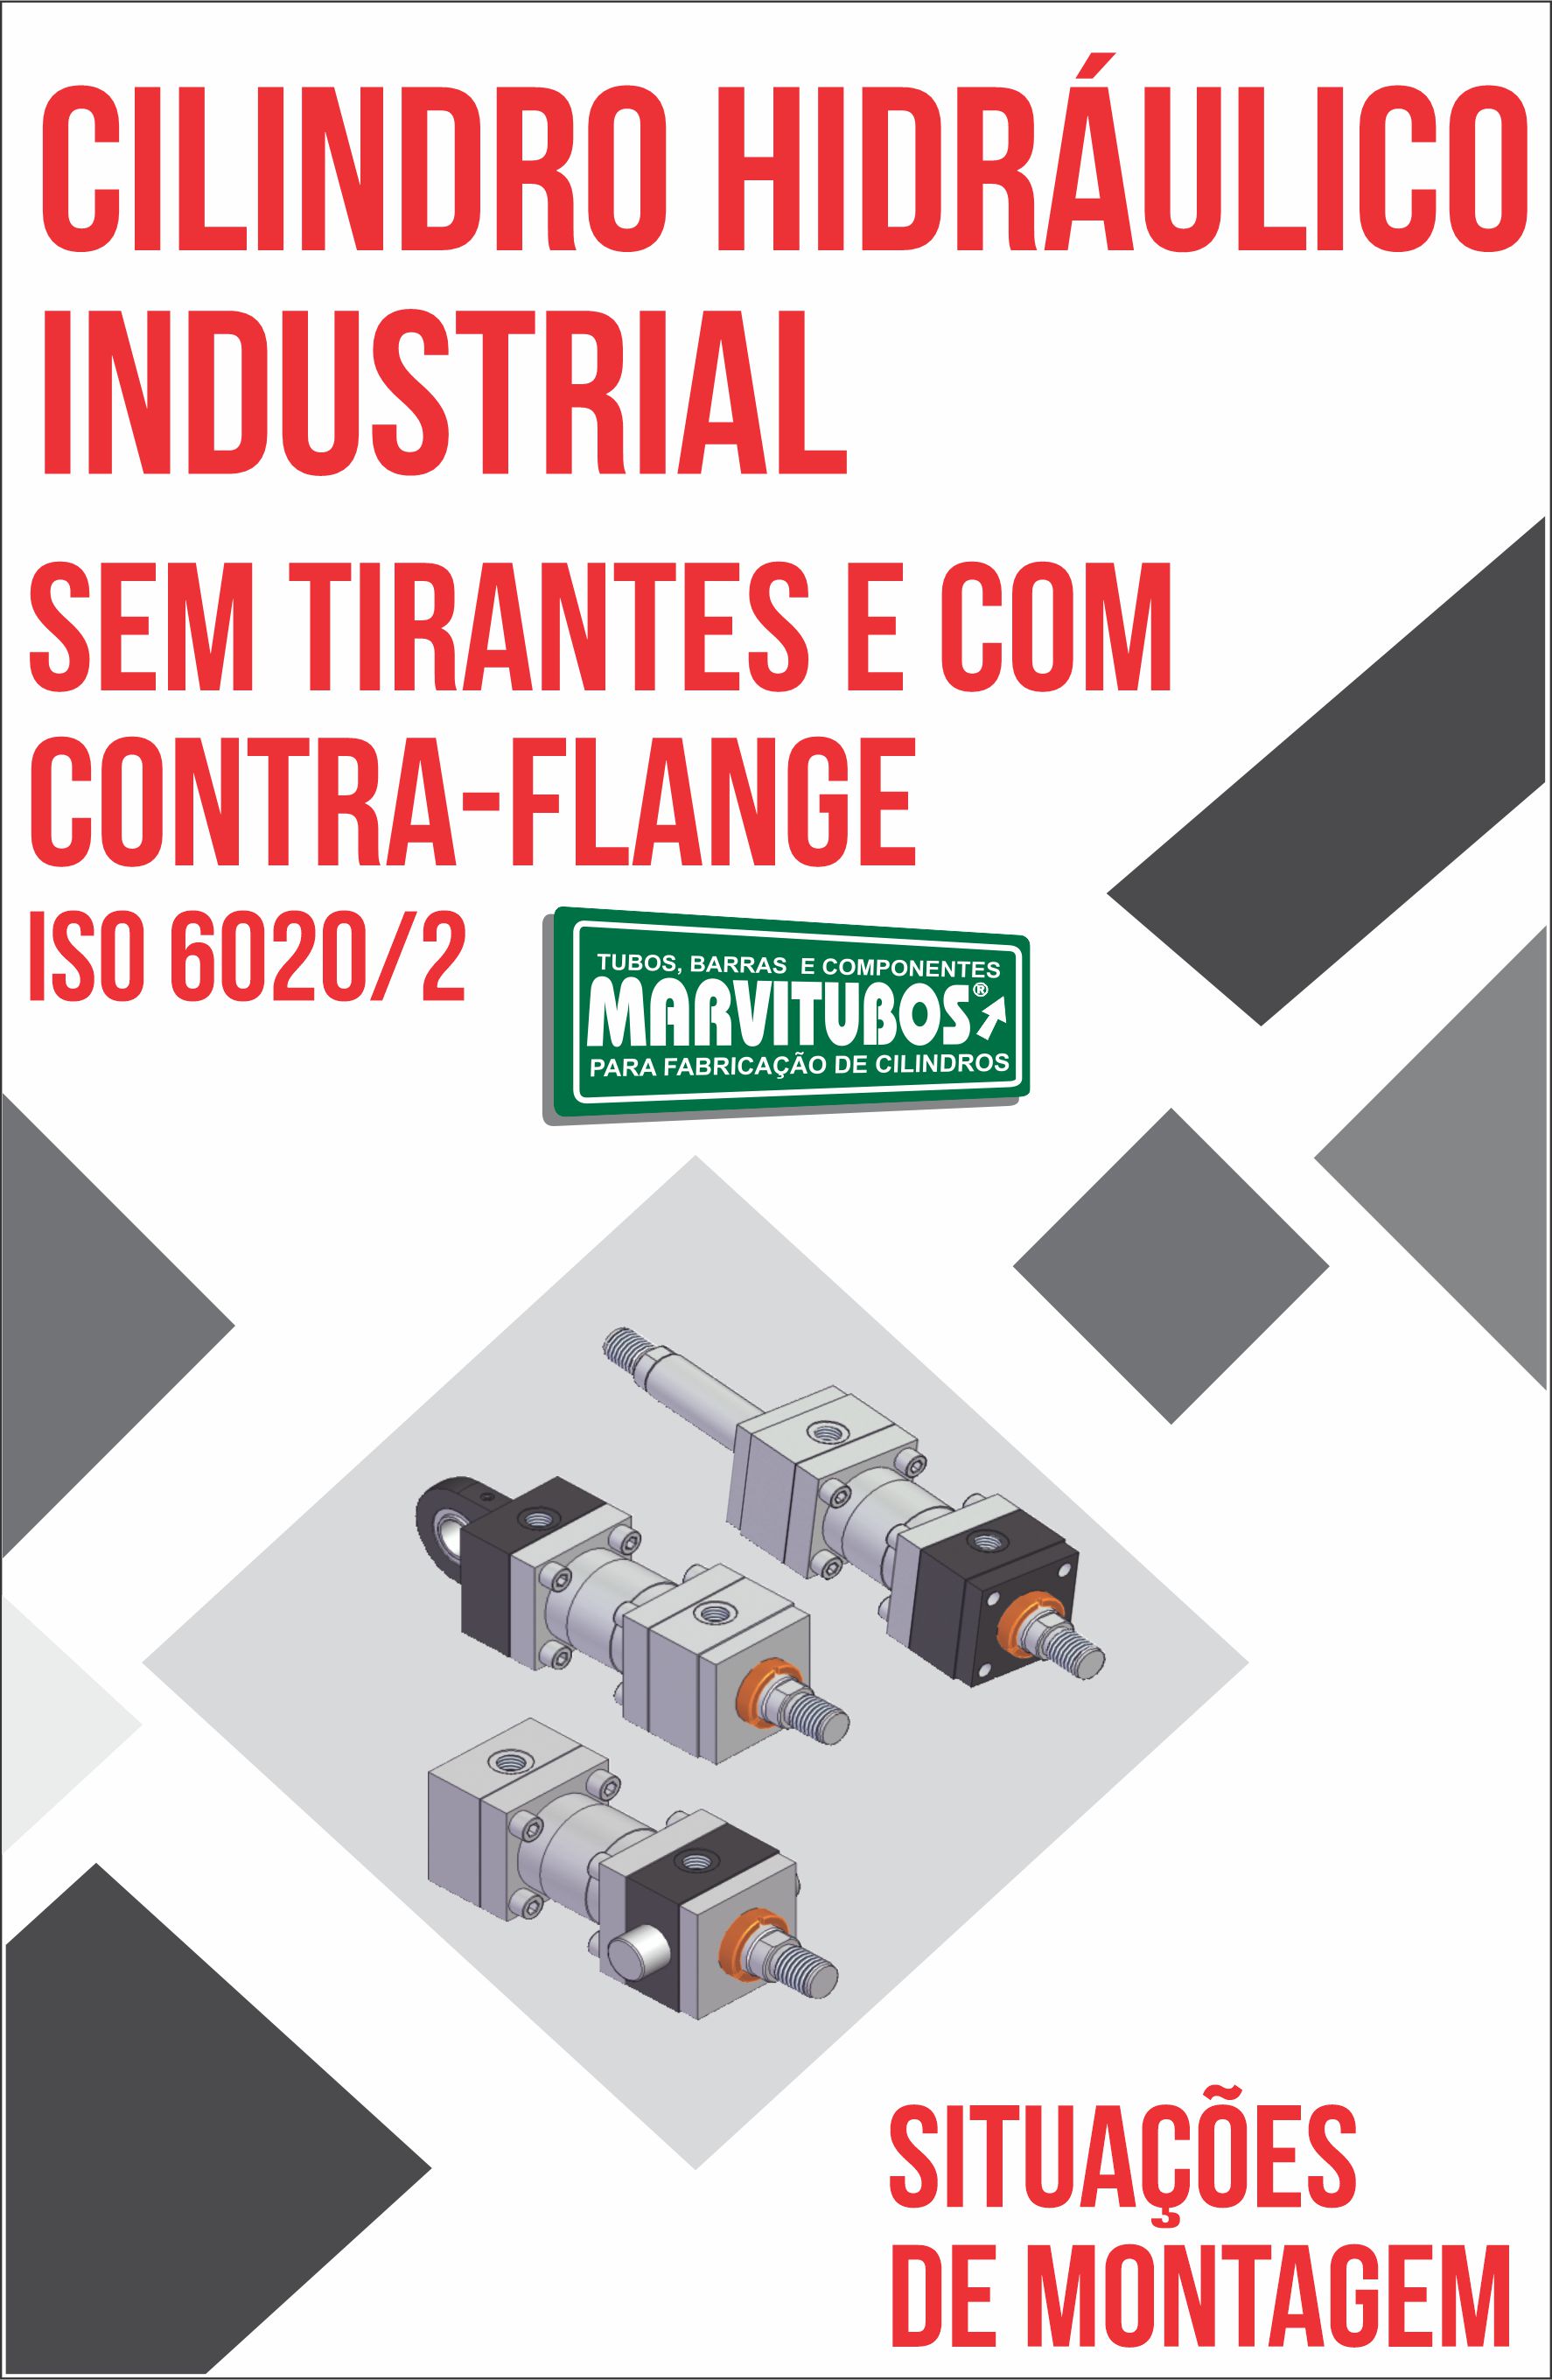 SITUAO DE MONTAGEM CILINDRO HIDRULICO CONTRA FLANGE  ISO 6020/2 - PRESSO: 210 BAR